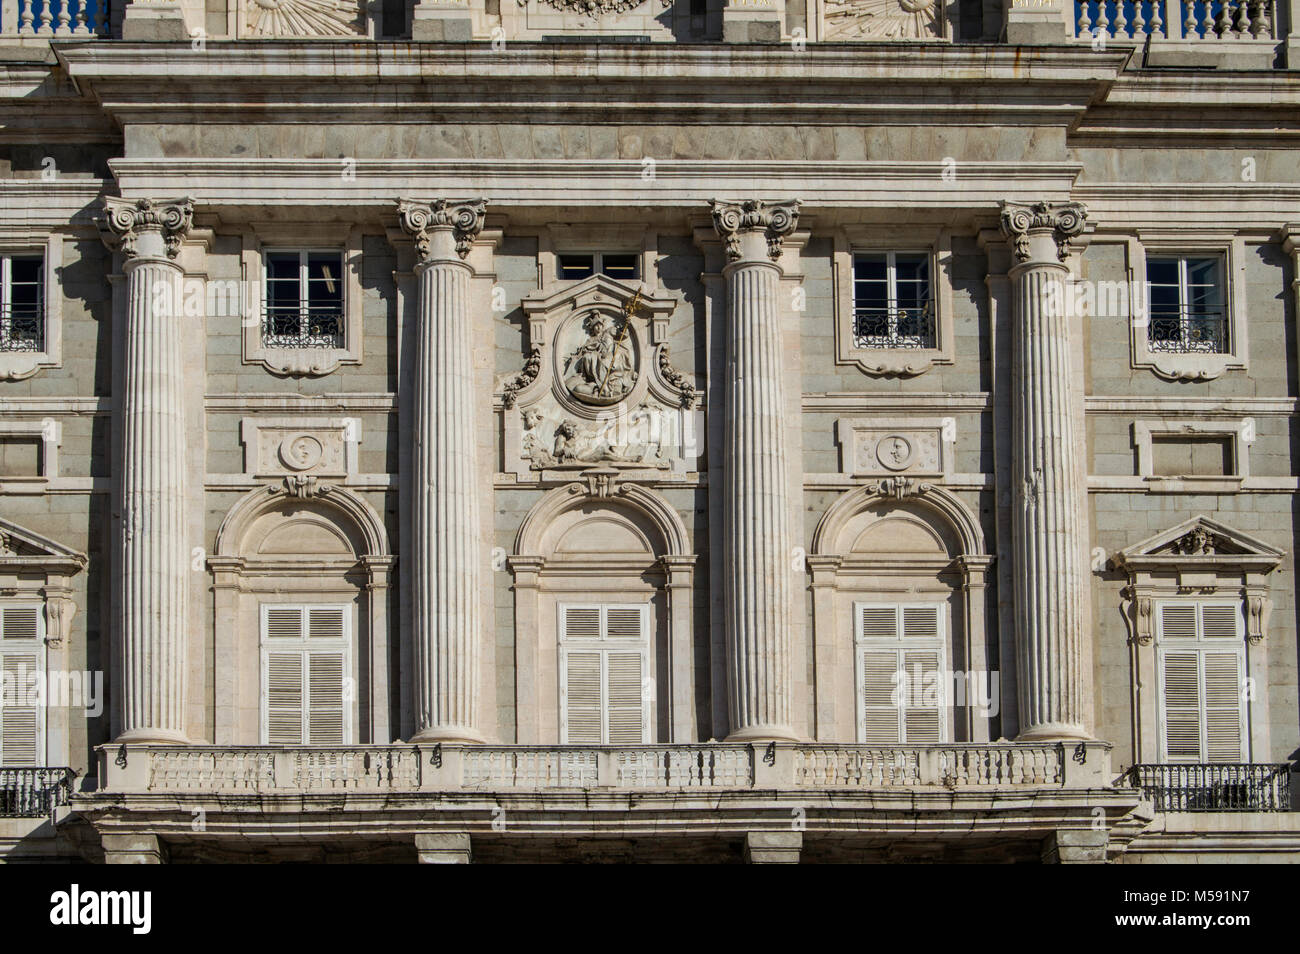 Balcon de style baroque avec trois portes et un arc en plein cintre et quatre colonnes cannelées, balustrade et médaillon avec chiffres de secours. Banque D'Images